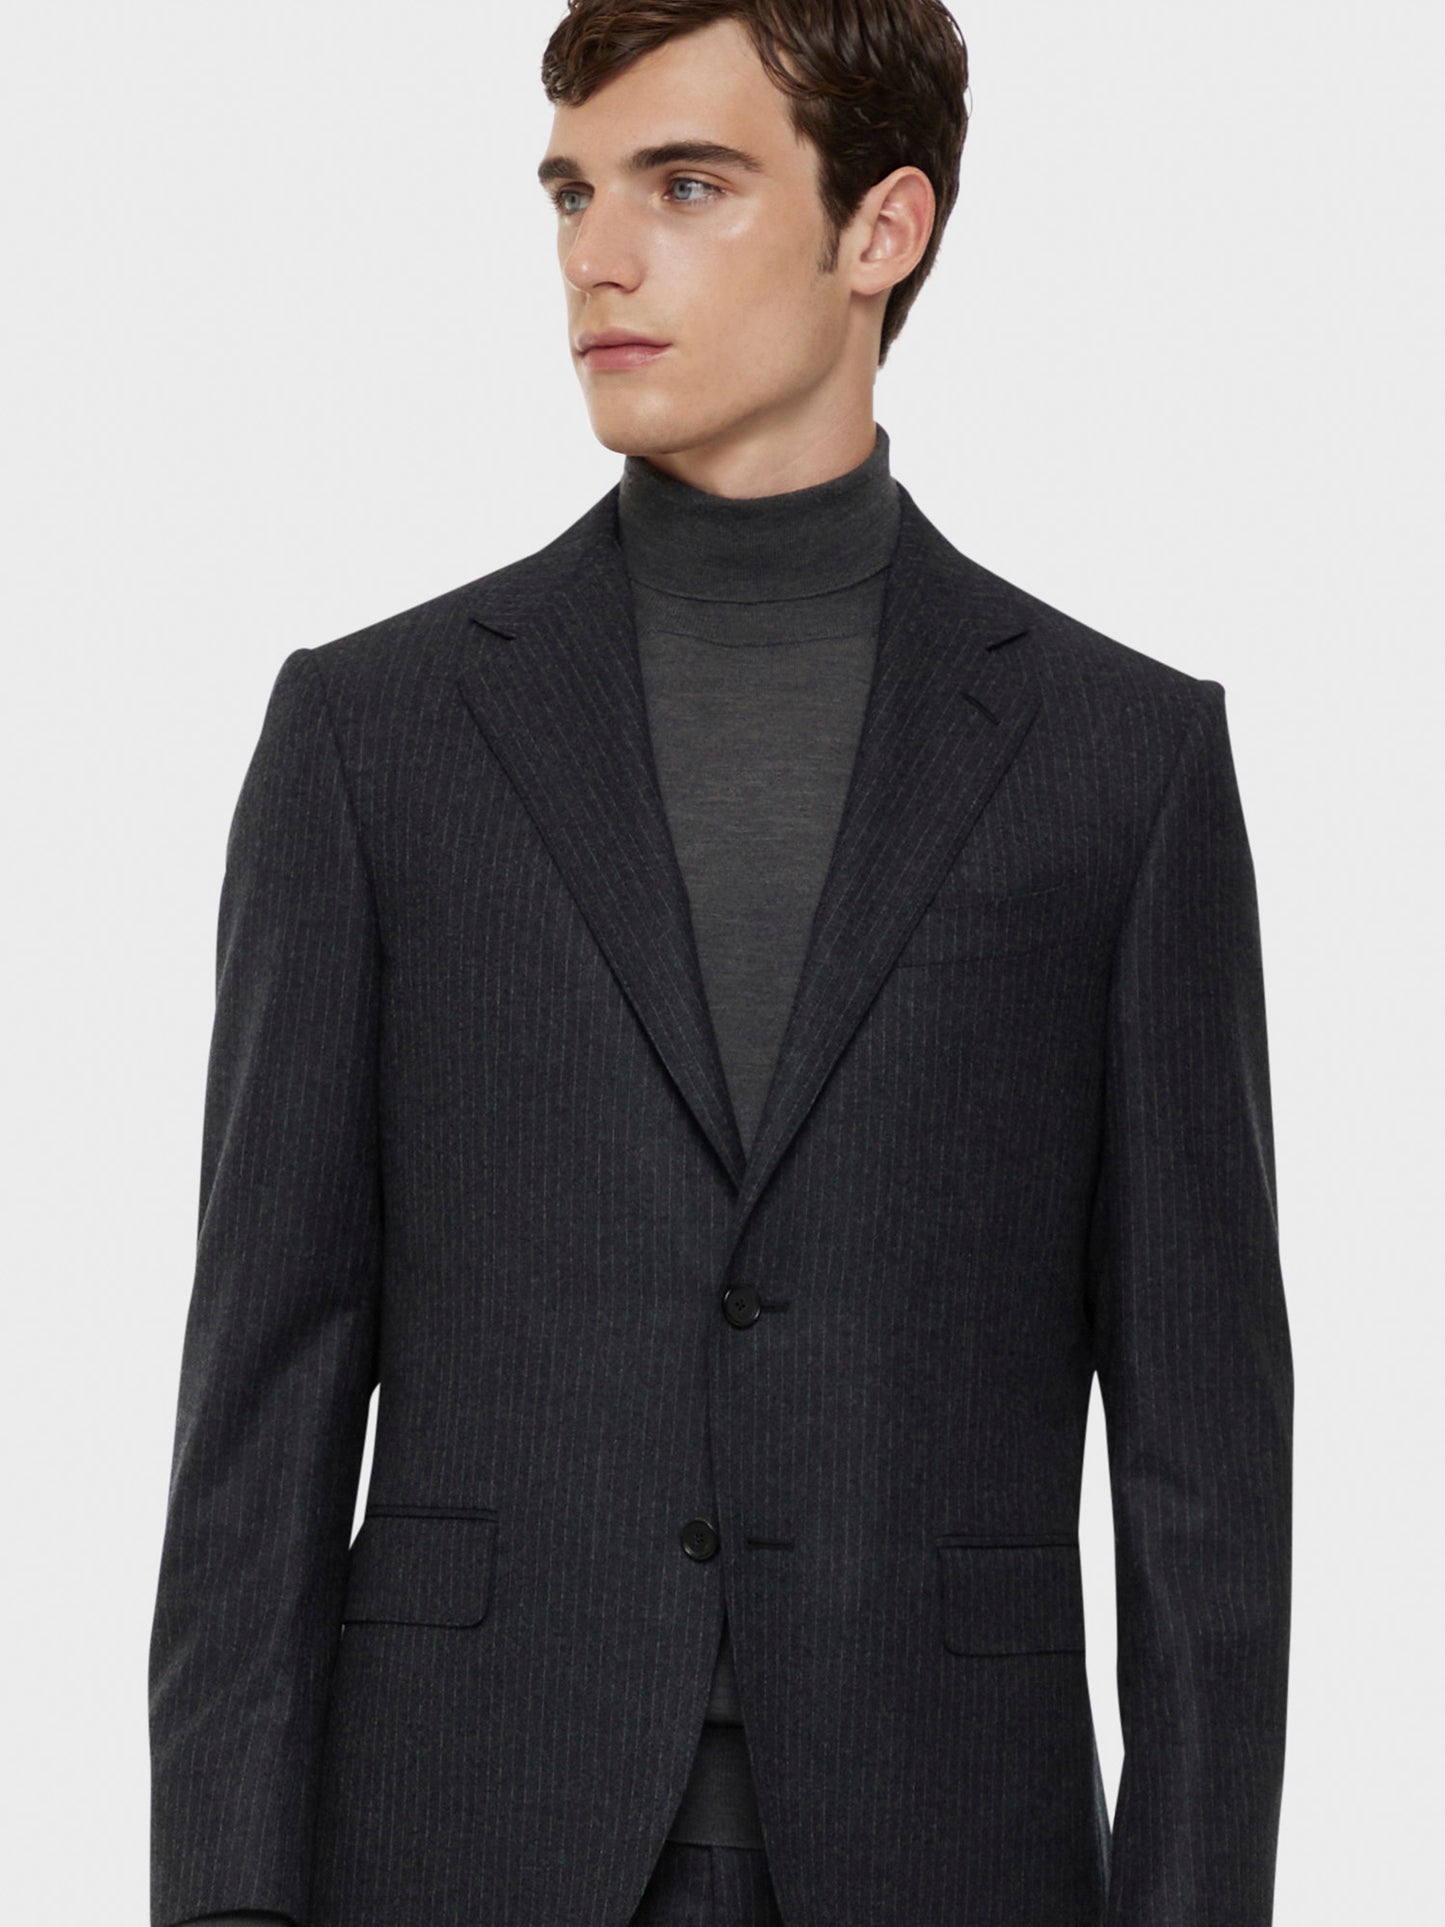 Caruso Menswear Abbigliamento Uomo Abito norma monopetto in flanella di lana grigio drop 7R dettaglio giacca